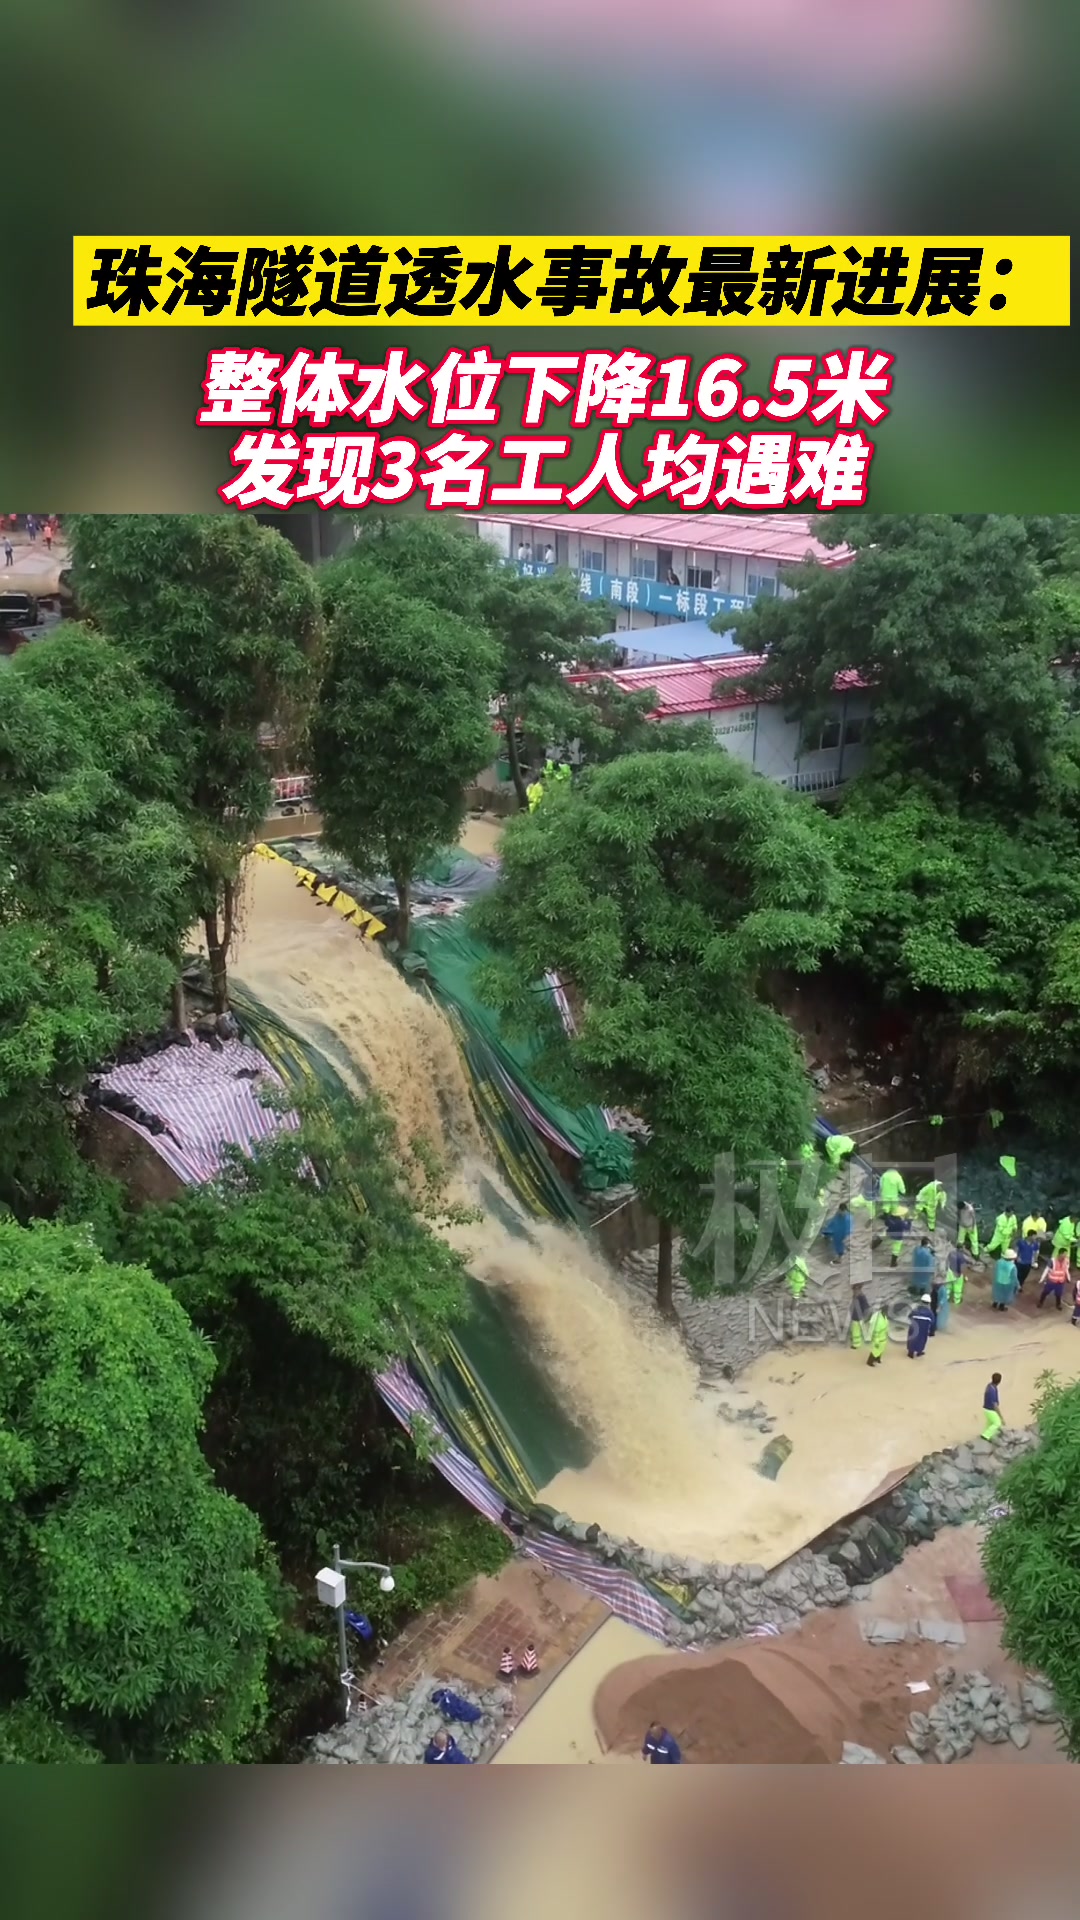 珠海隧道透水事故最新进展:整体水位下降165米,发现3名工人均遇难